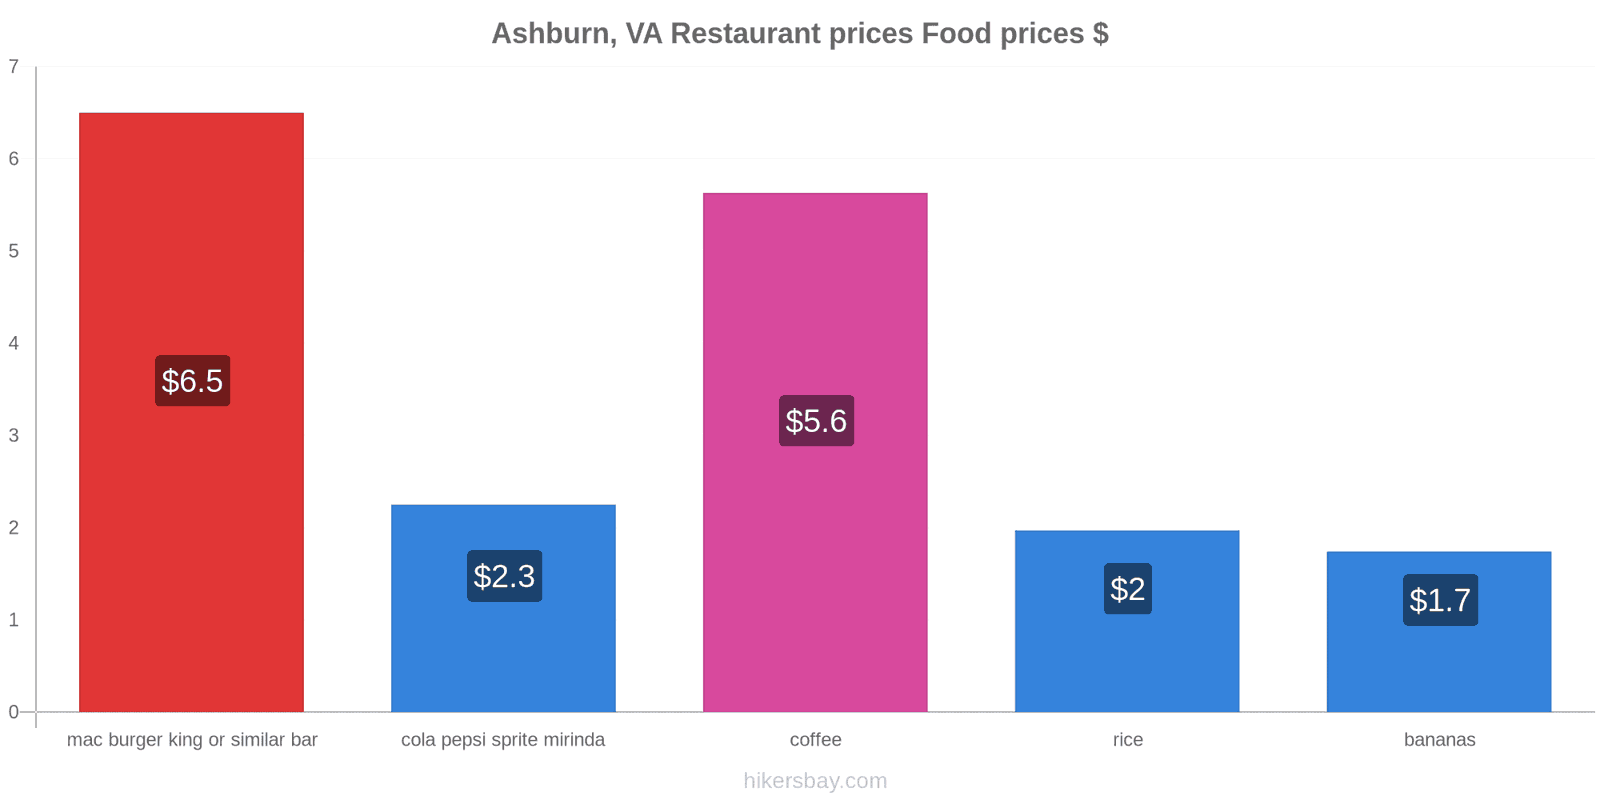 Ashburn, VA price changes hikersbay.com